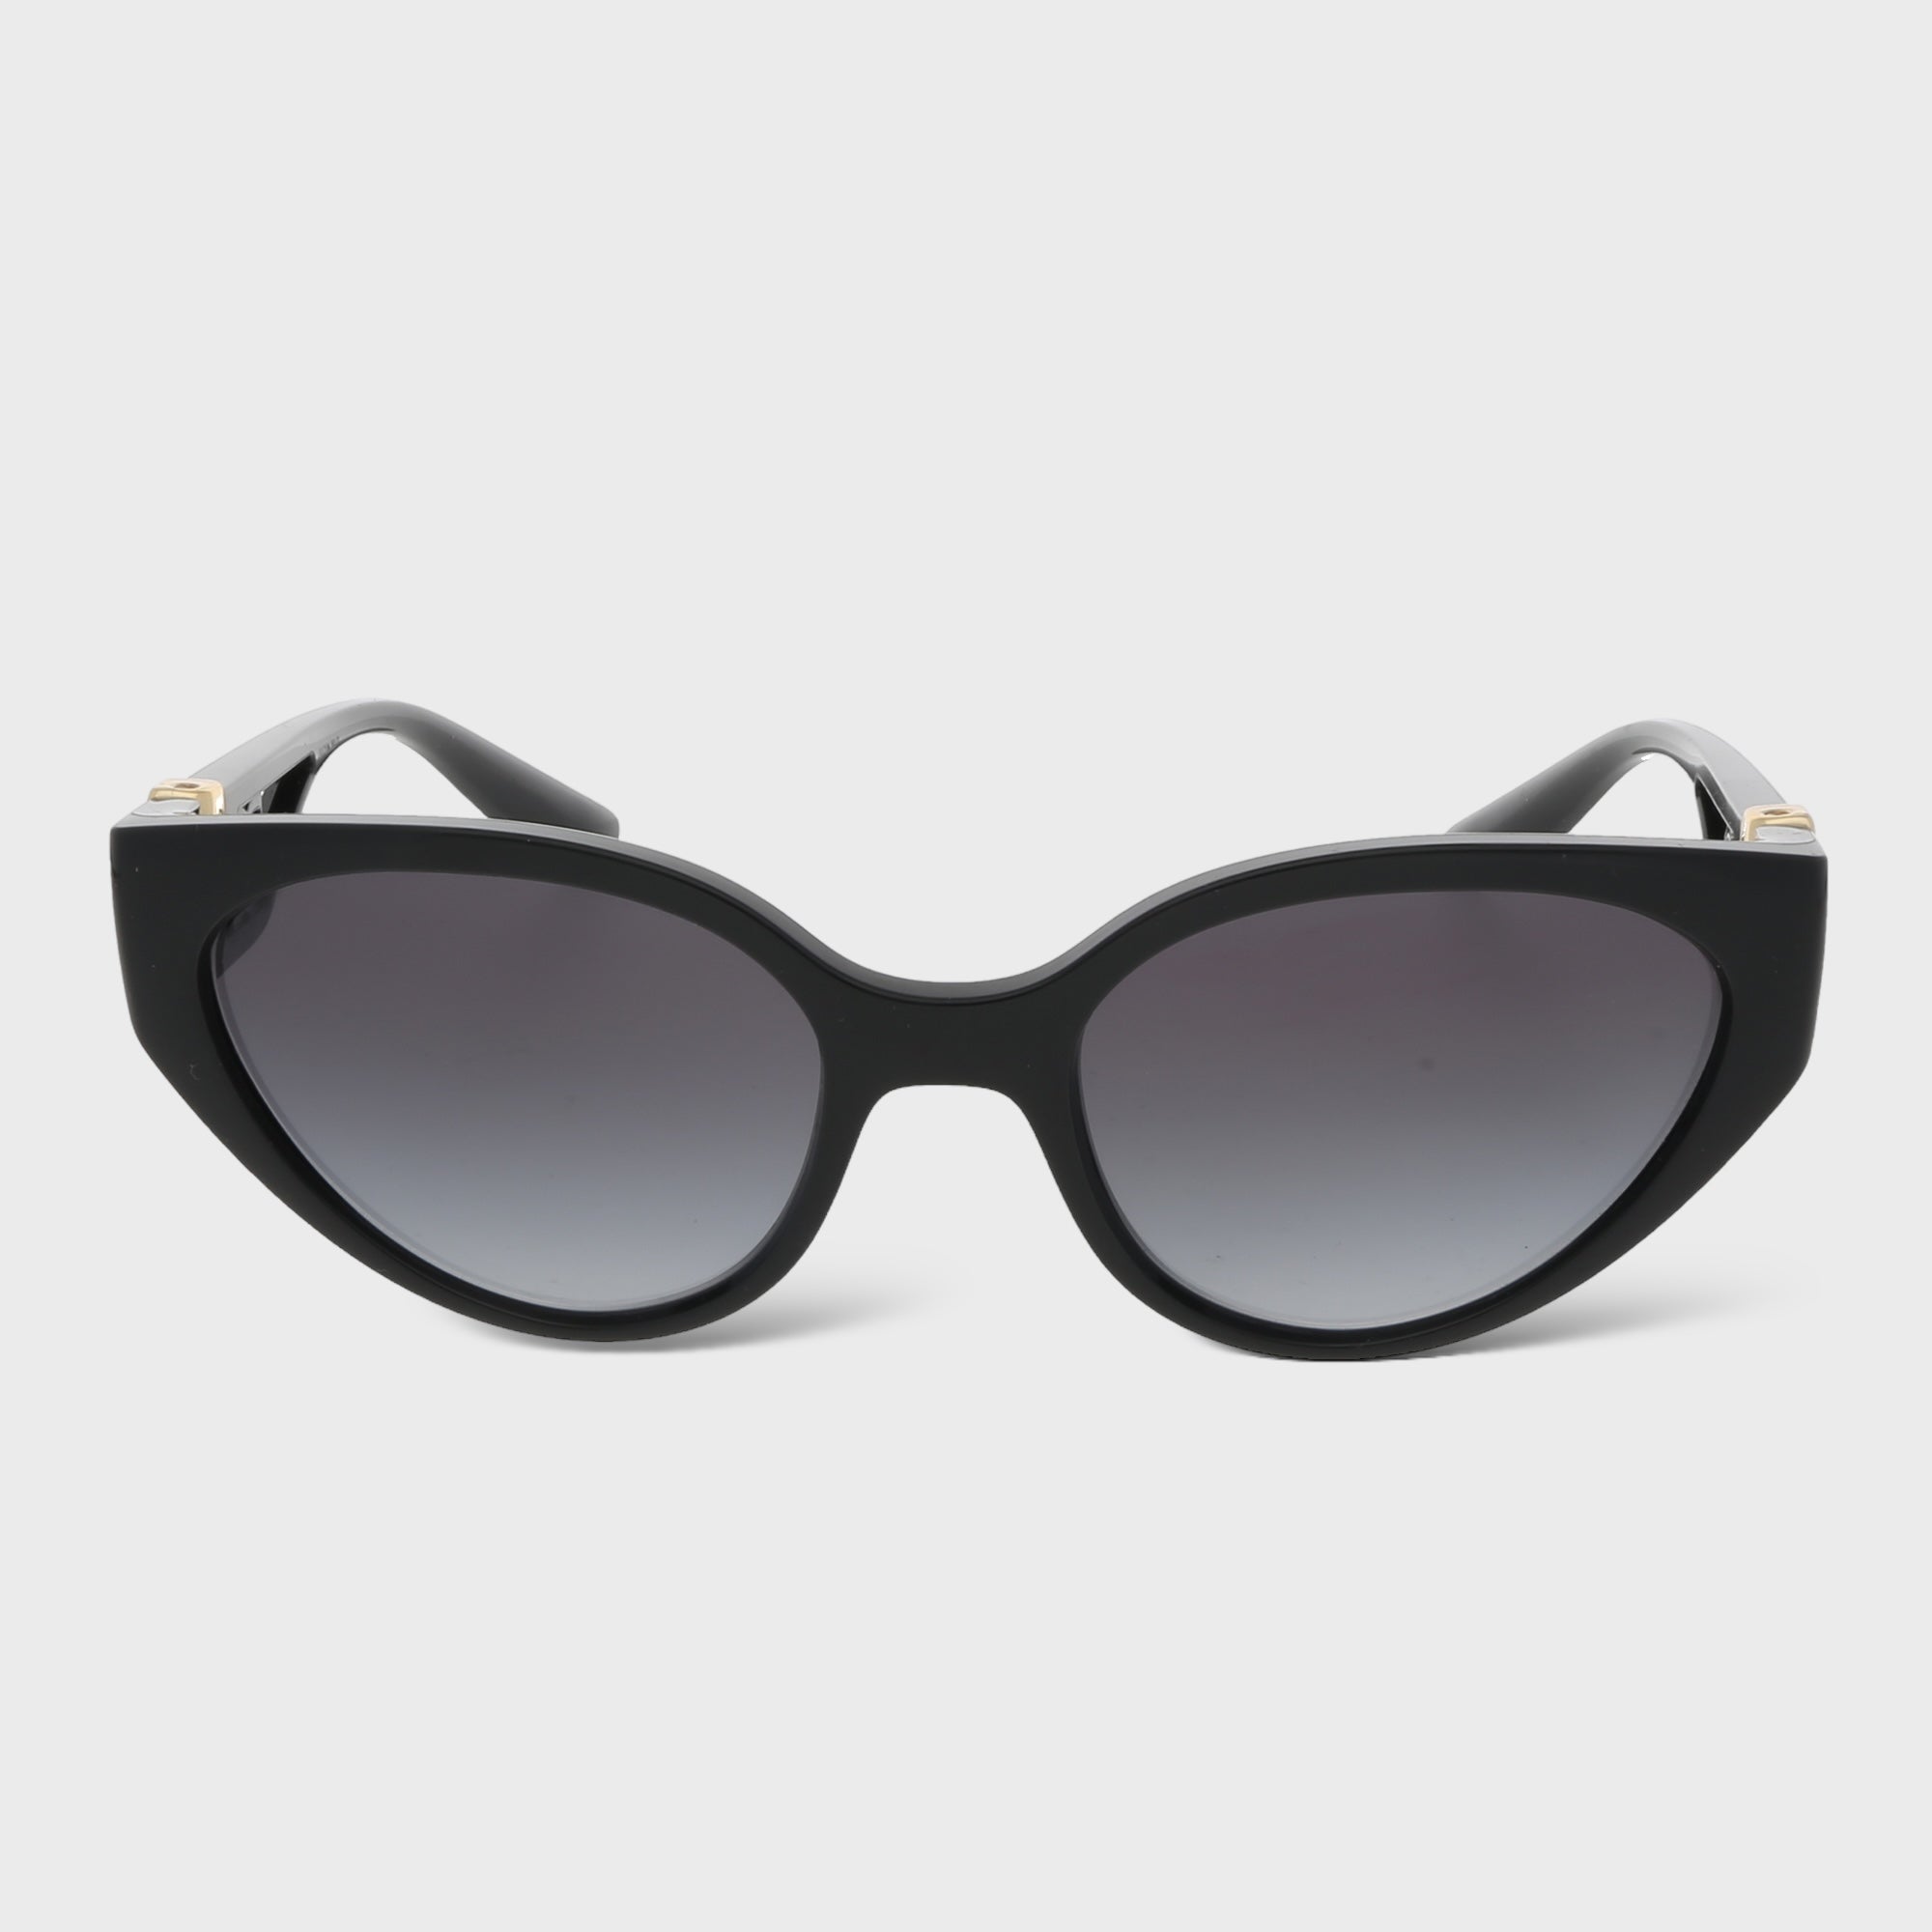 Second Hand Luxus Sonnenbrille jetzt online kaufen auf kaleaz.